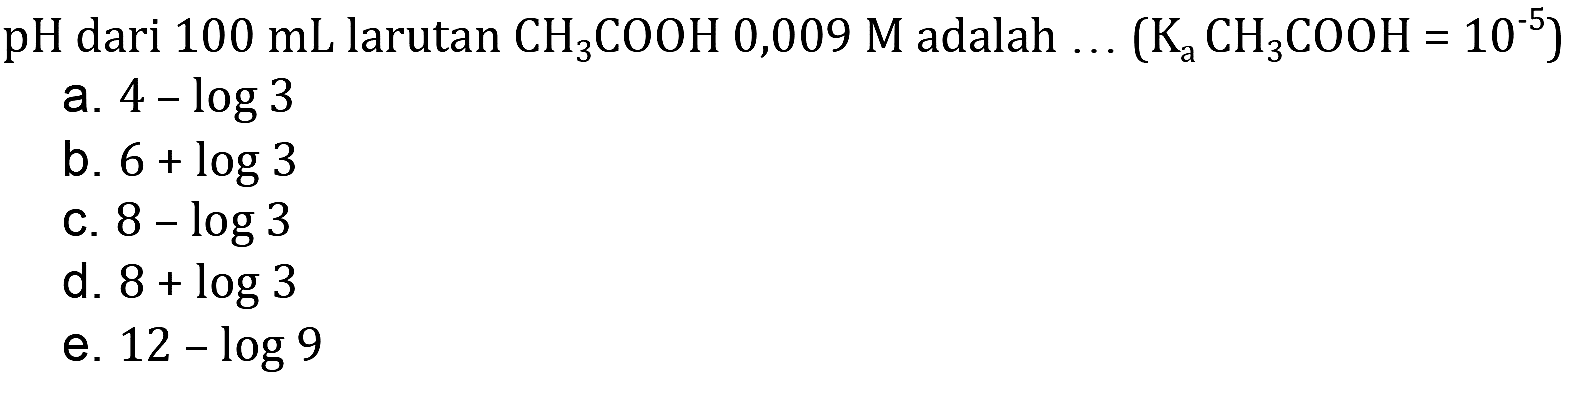 pH dari  100 mL larutan CH3 COOH 0,009 M adalah  ...(Ka CH3 COOH=10^-5) 
a.  4-log 3 
b.  6+log 3 
c.  8-log 3 
d.  8+log 3 
e.  12-log 9 